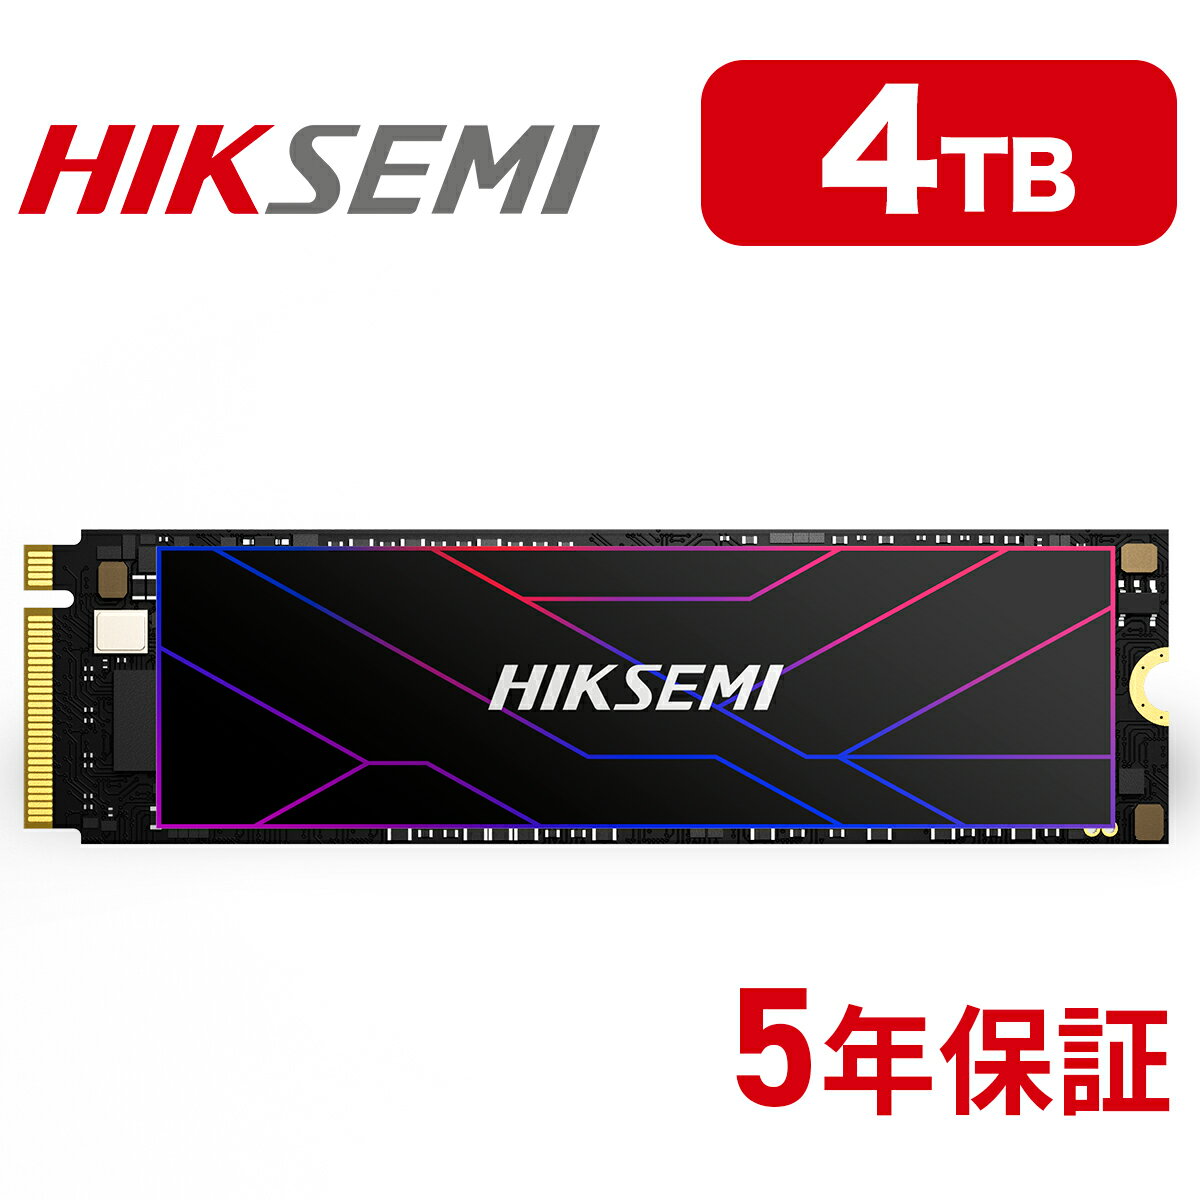 HIKSEMI SSD 4TB 放熱シート付き 高耐久性(TBW:7200TB) NVMe SSD PCIe Gen4.0×4 読み取り:7,450MB/s 書き込み:6,500M…